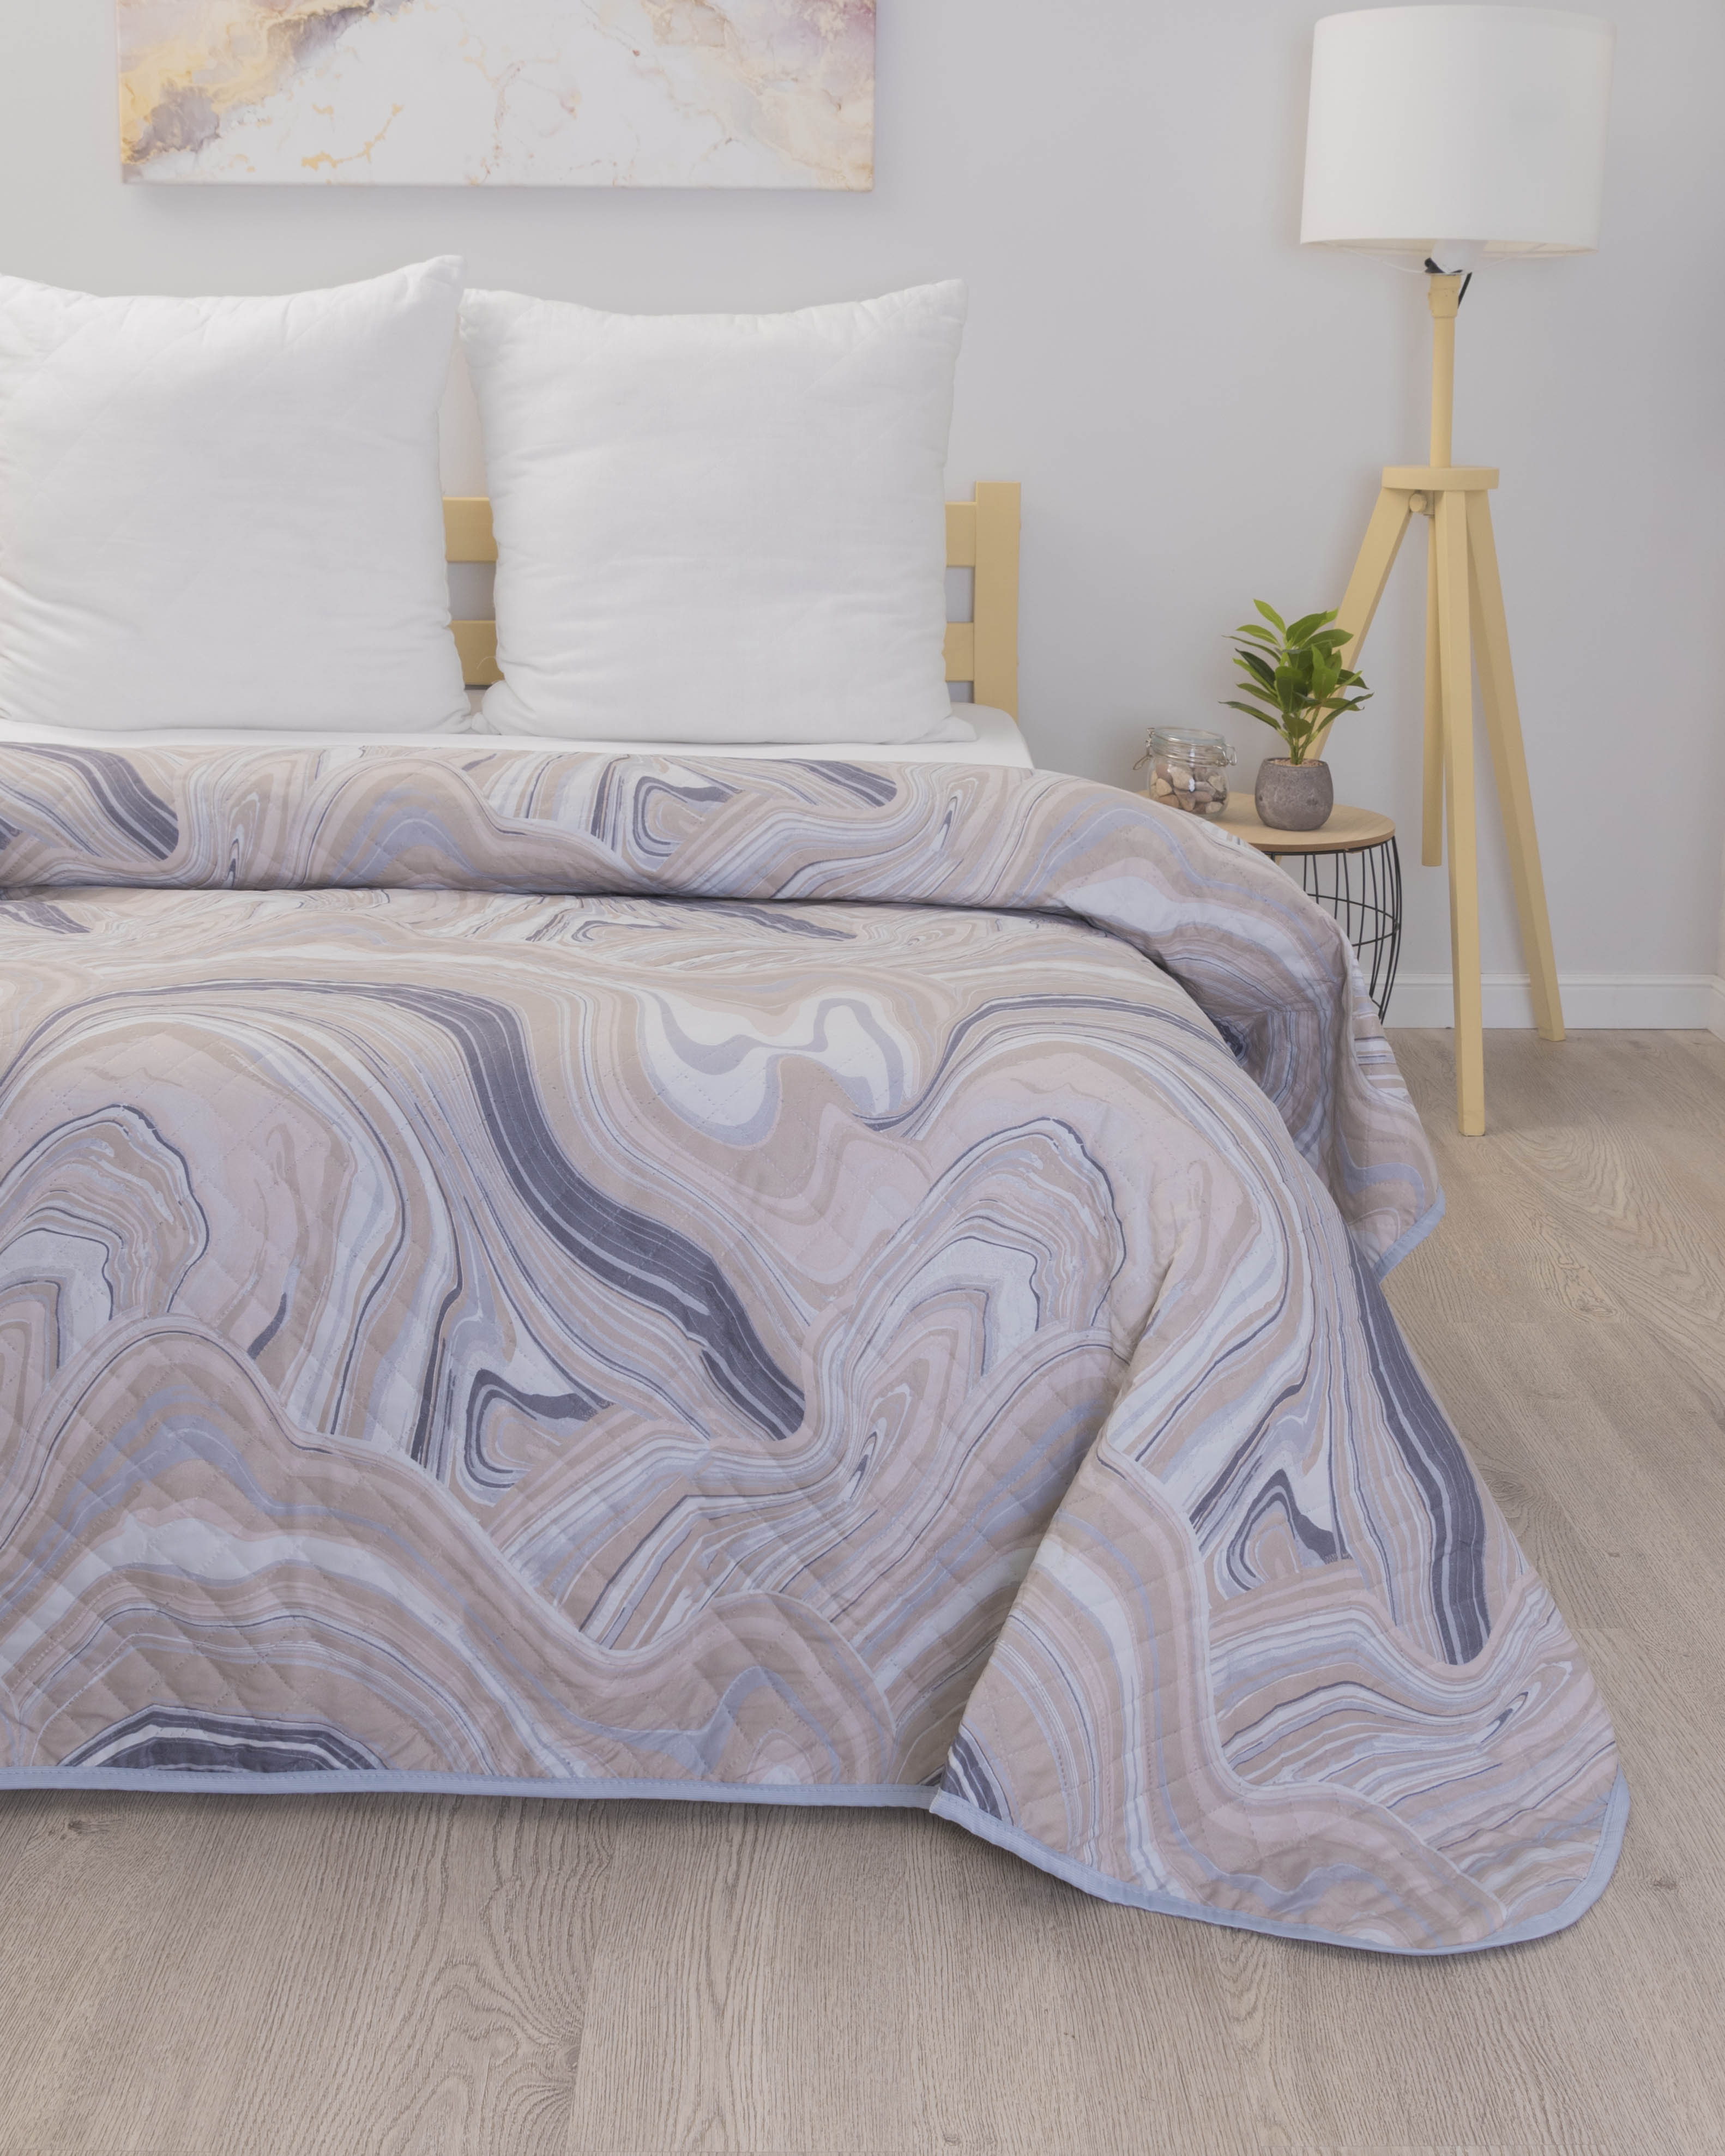 Покрывало ультрастеп на кровать Полисатин, Вселенная Текстиля, k12970-05 240х210 см, Евро